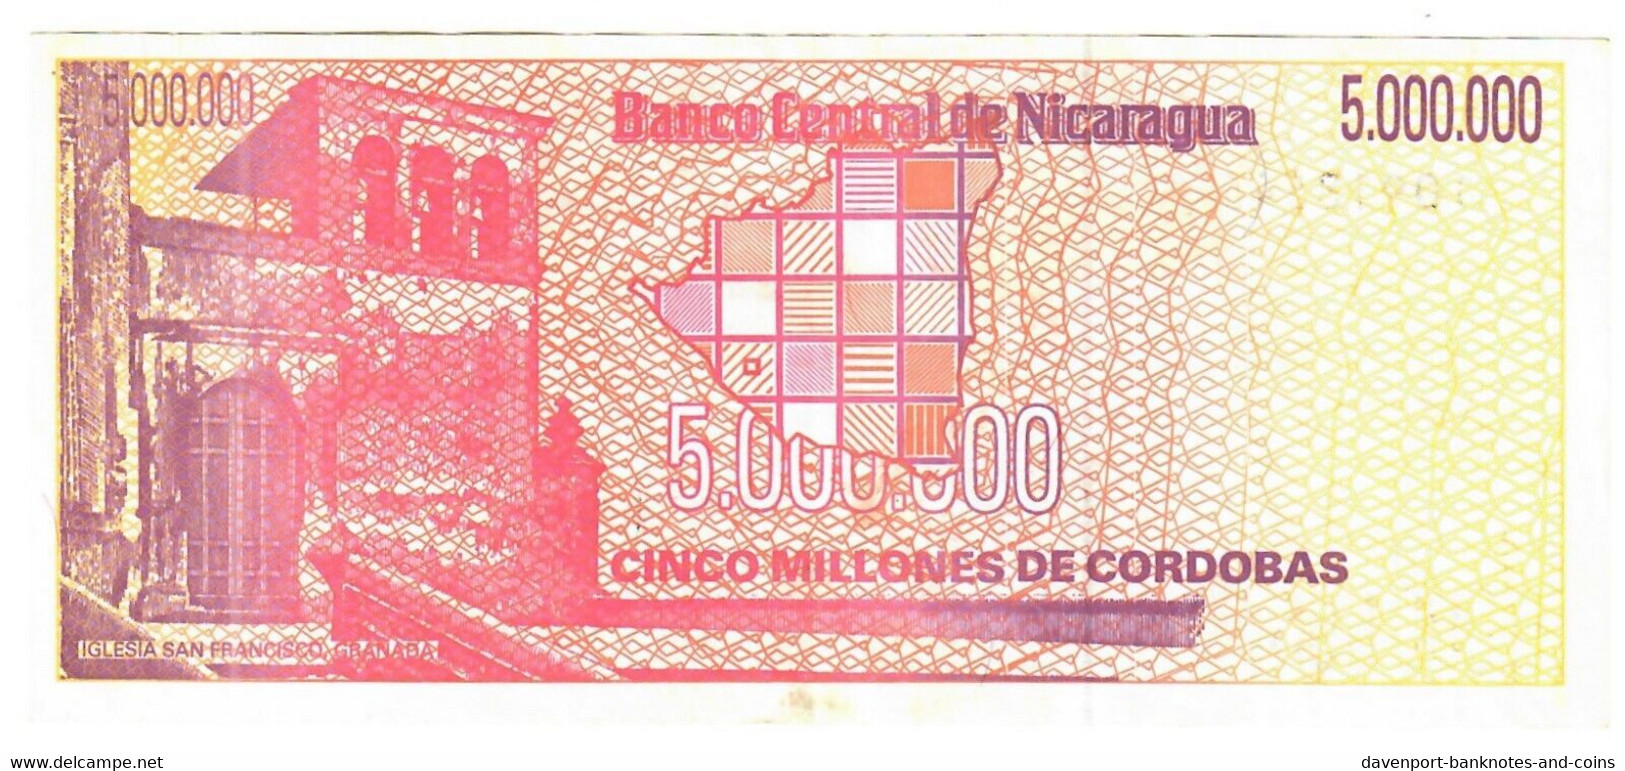 Nicaragua 5000000 Cordobas 1990 EF - Saudi Arabia